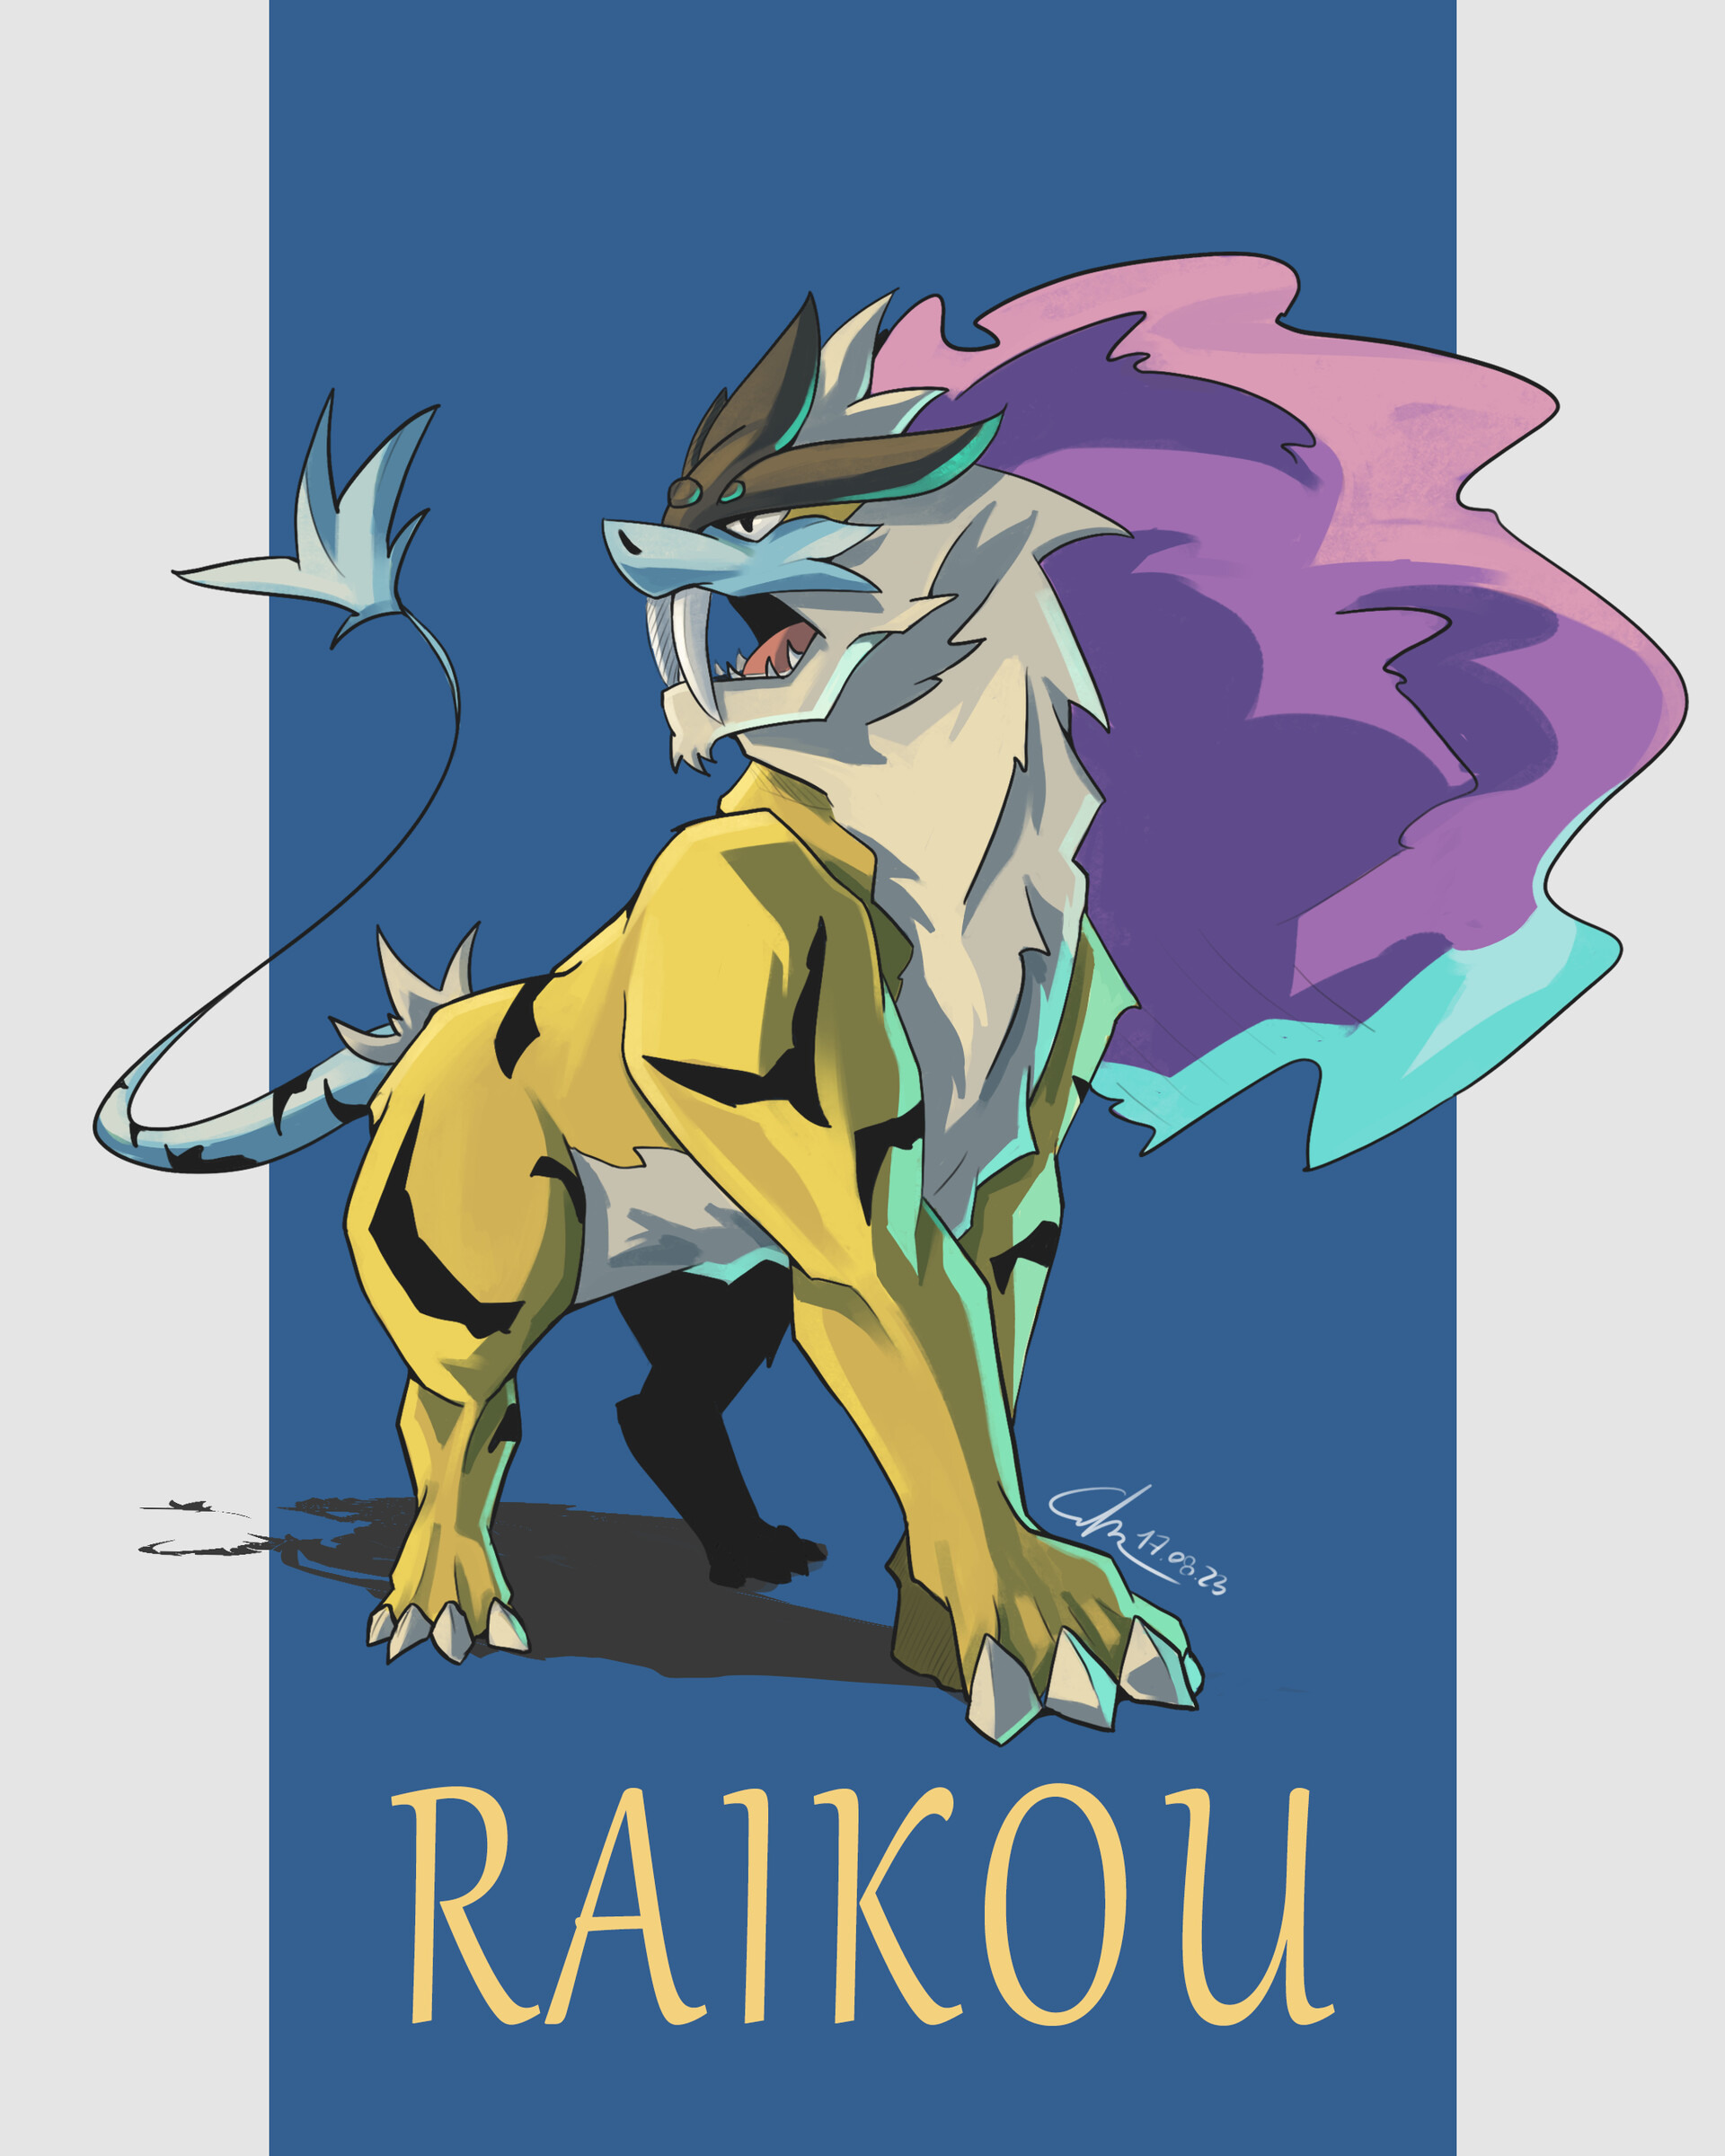 Pokemon Fan Designs Paradox Form for Raikou